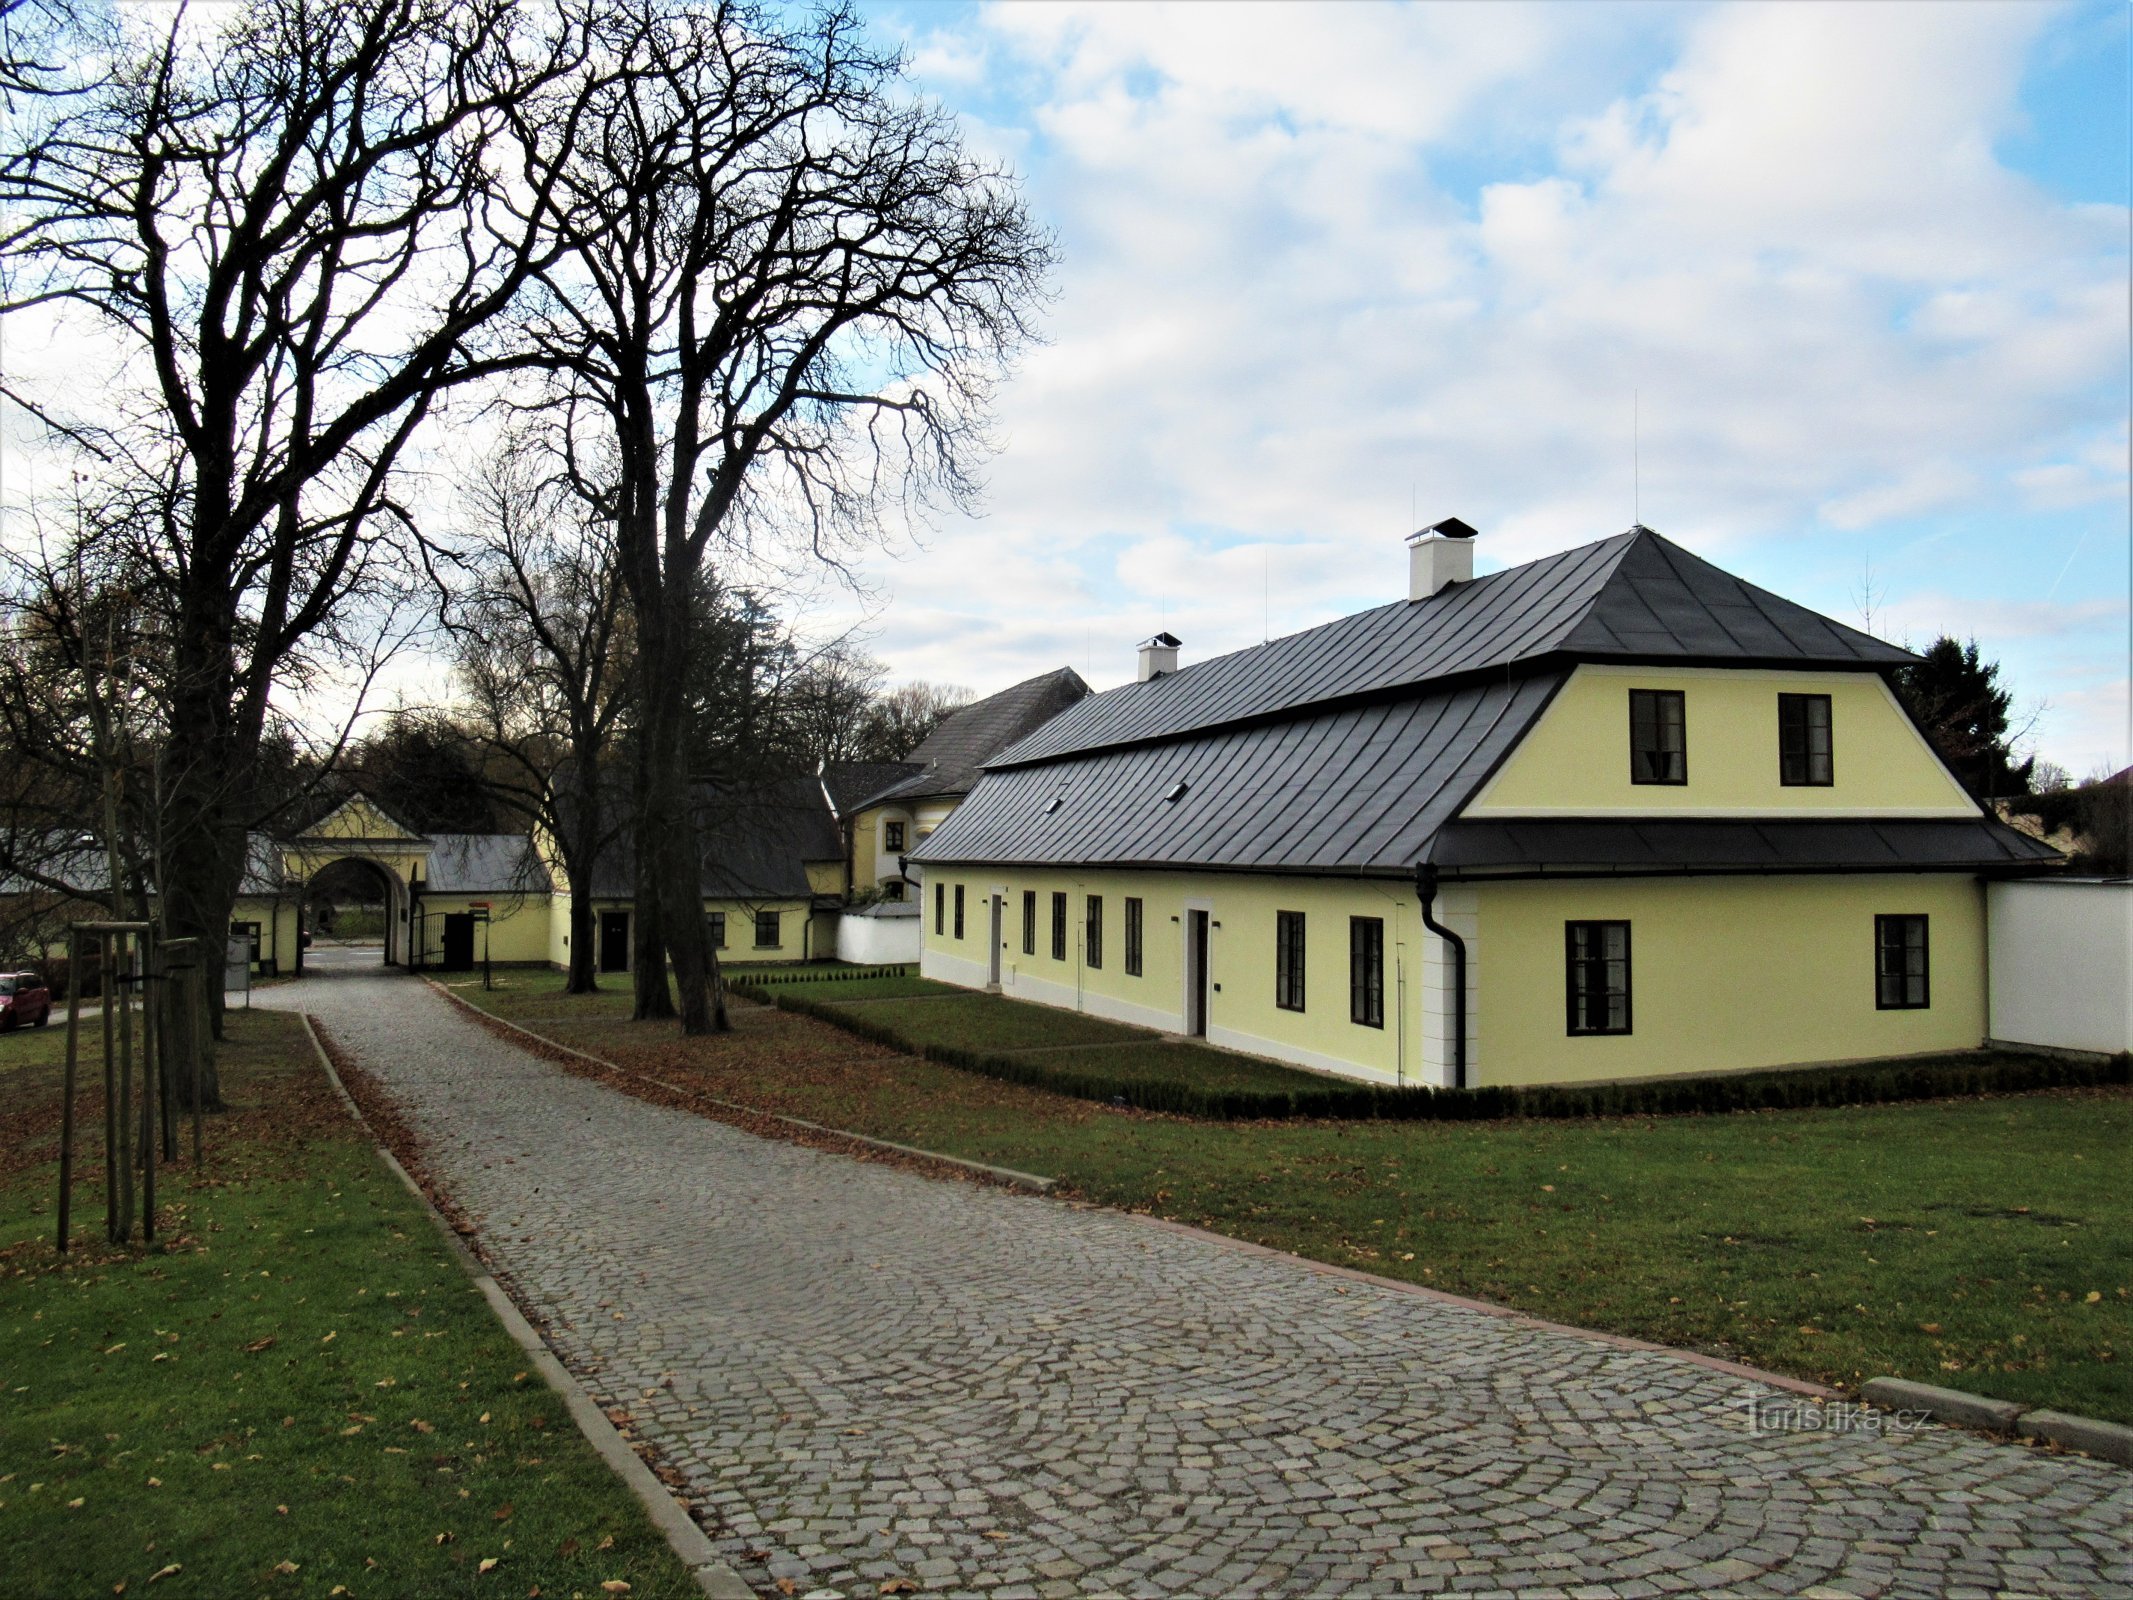 Žďár nad Sázavou - casa grădinarului de lângă castel